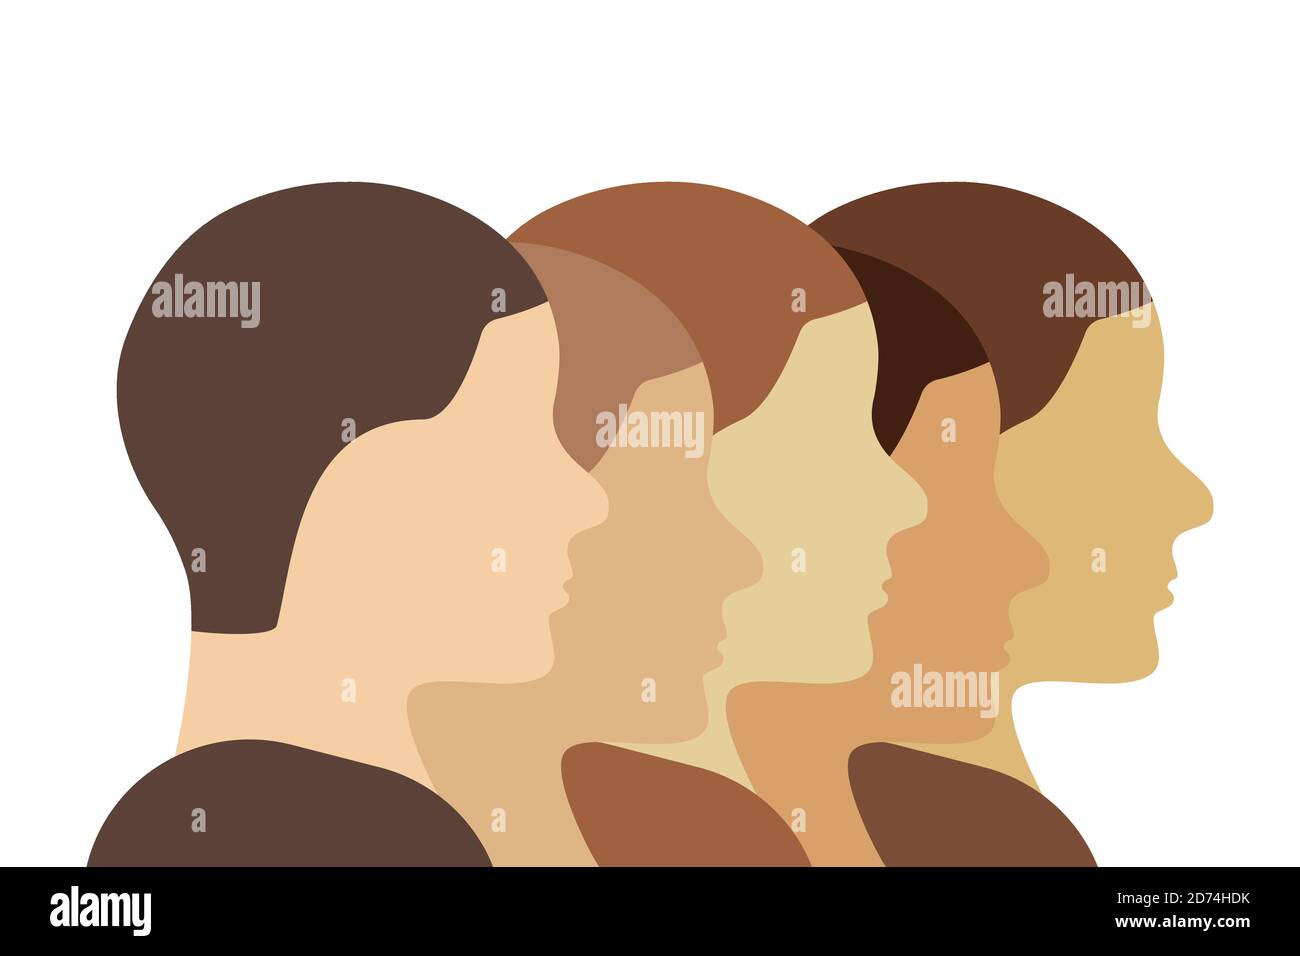 Grupo étnico caucásico (blanco) personas ilustración. Perfiles de cabezas humanas en una fila mostrando diversidad y unidad. Vector de arte lineal. Ilustración del Vector